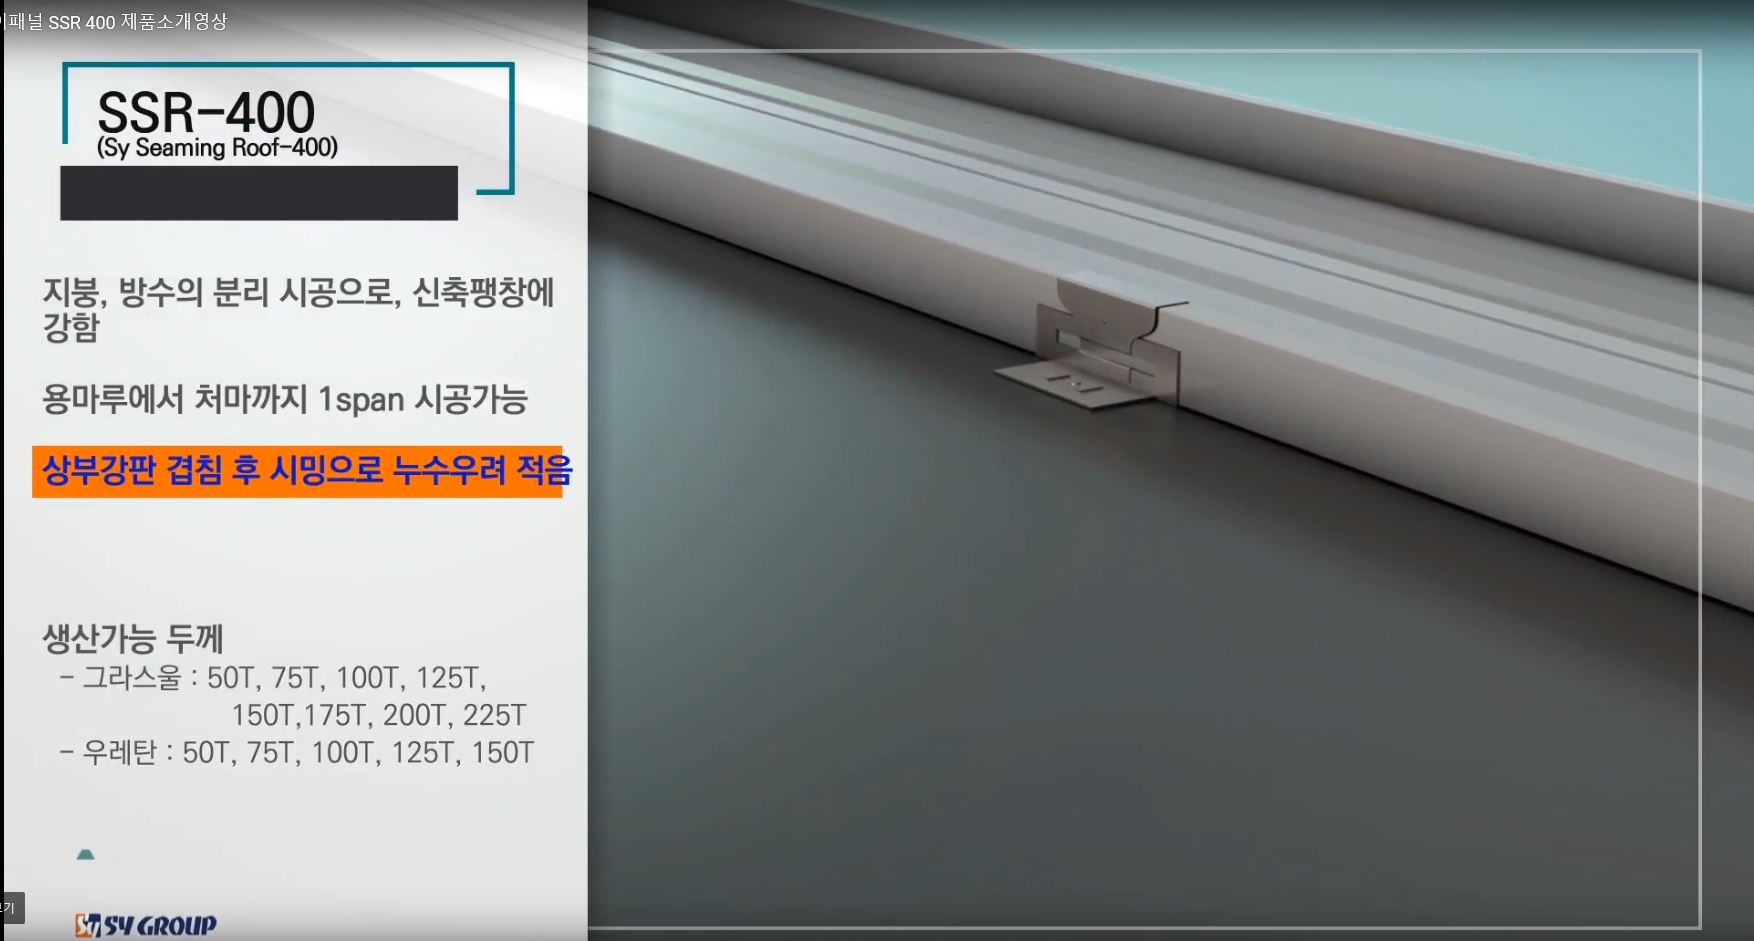 2017 에스와이그룹 SSR400 소개영상(국문)